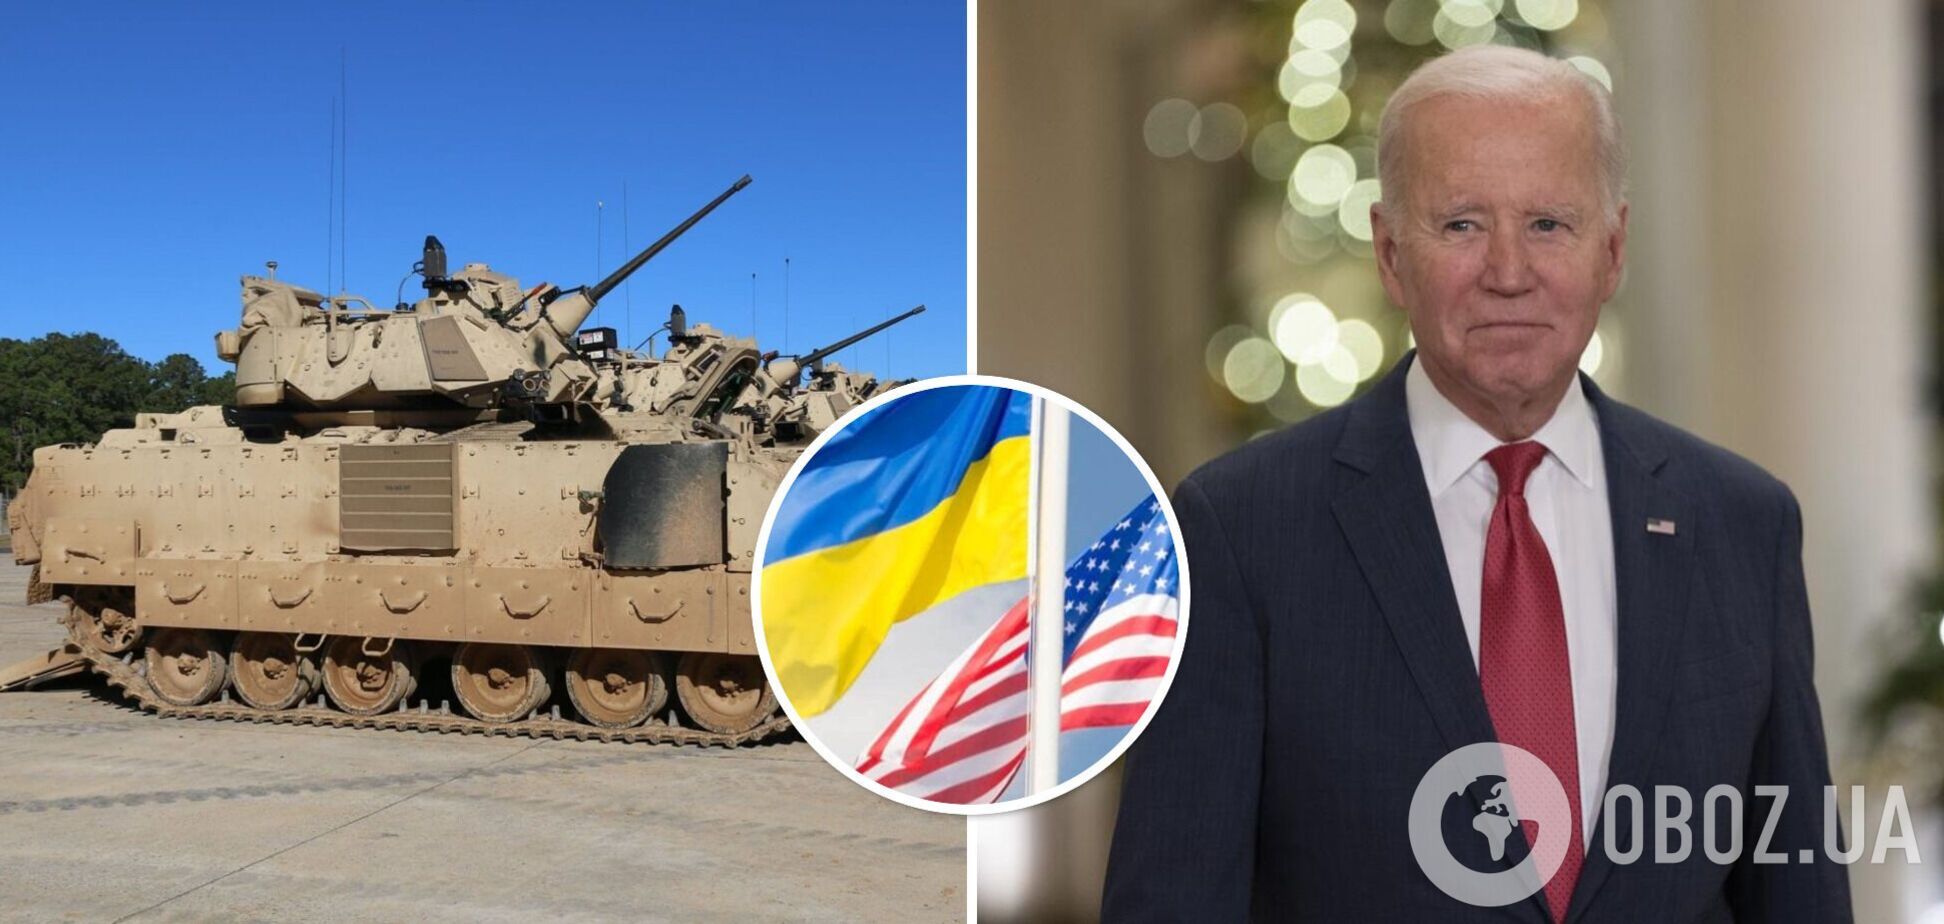 Байден: США рассматривают возможность предоставления Украине БМП Bradley